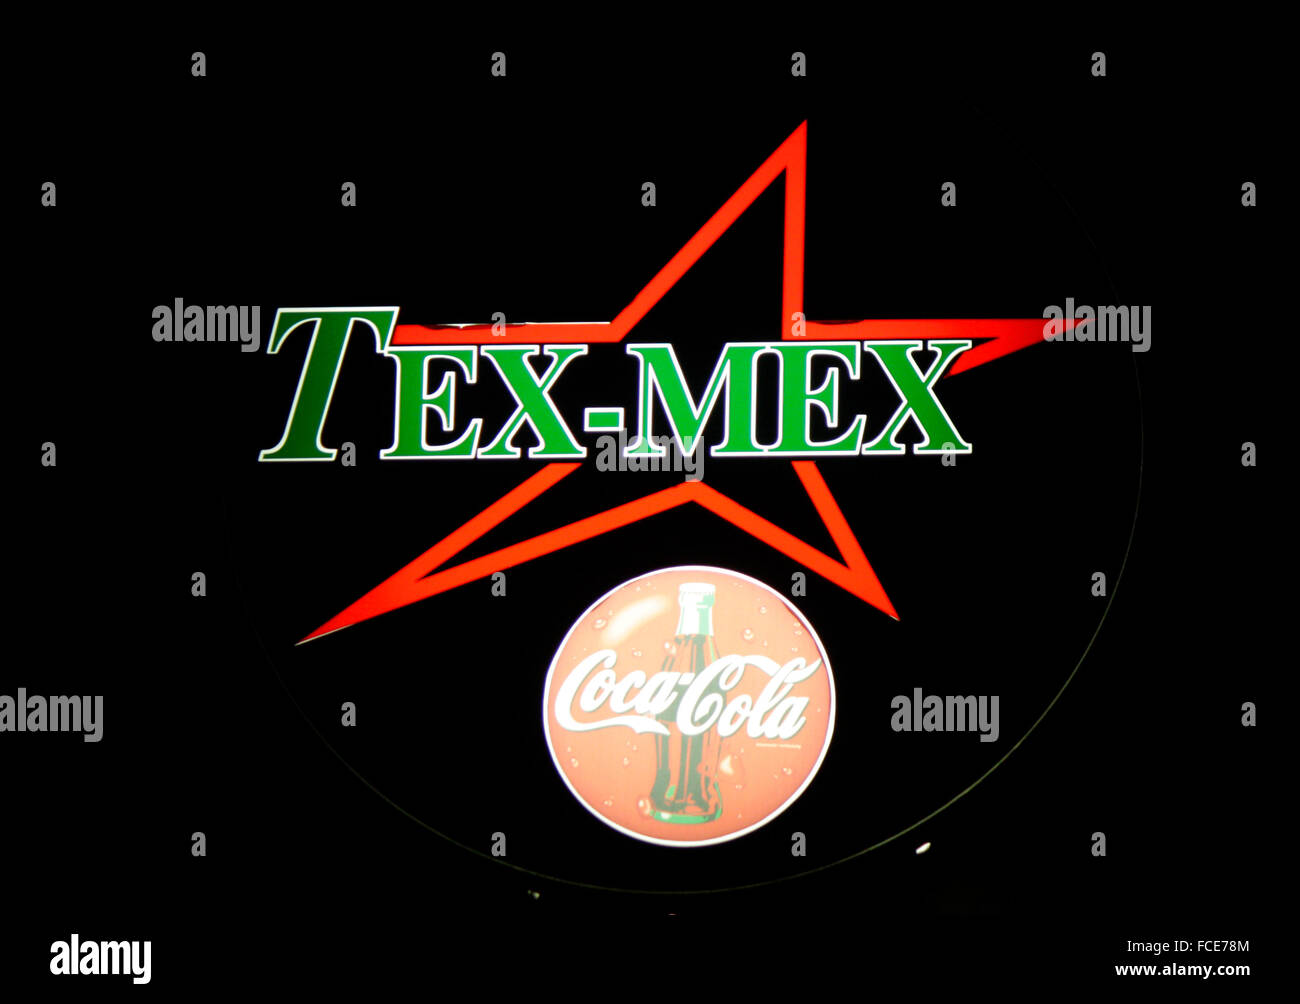 Markenname: 'Tex Mex' , 'Coca Cola', Berlin. Stock Photo